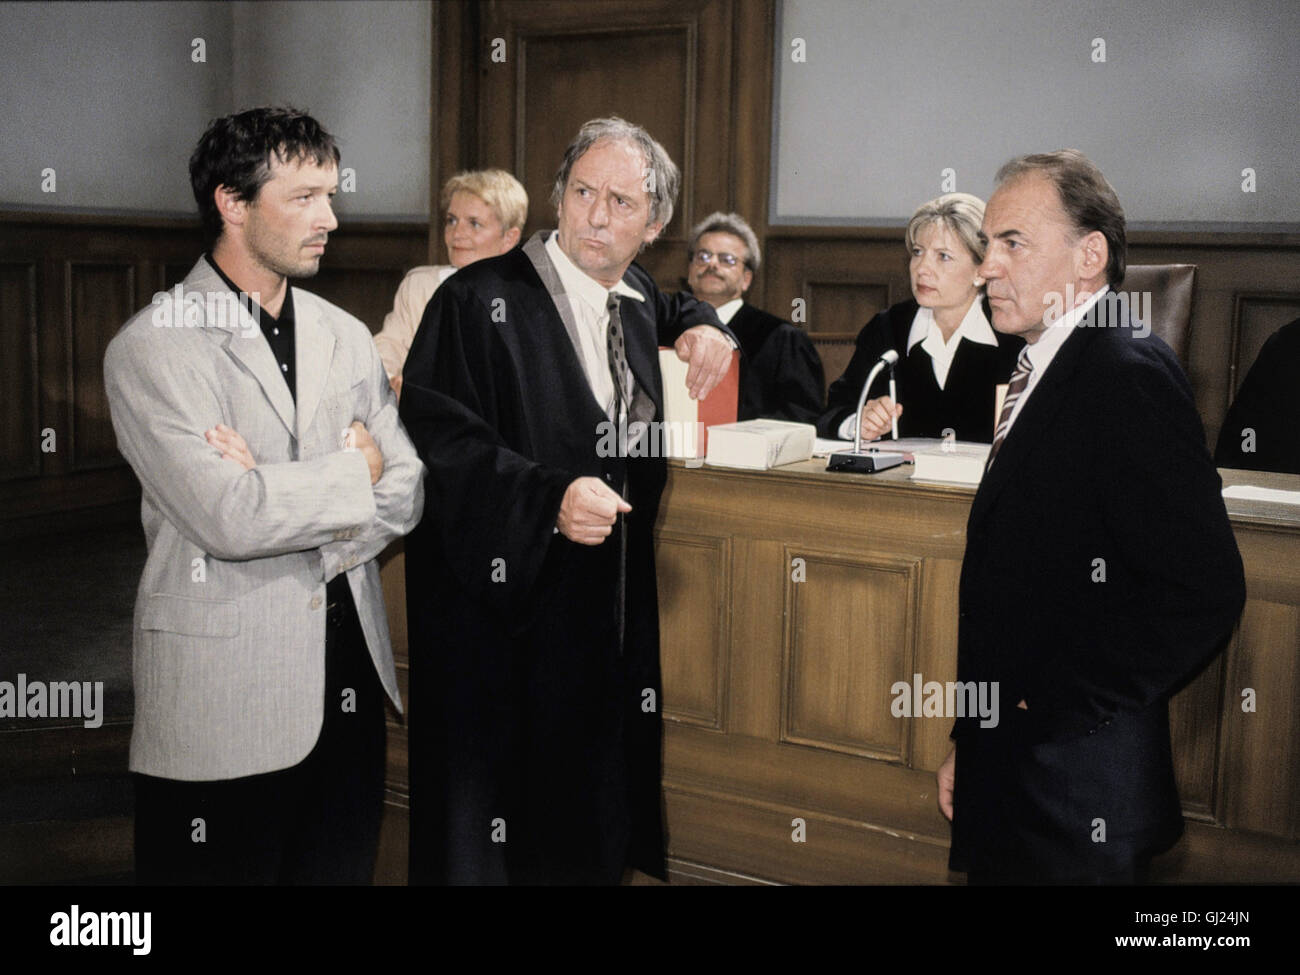 ANWALT ABEL - EIN RICHTER IN ANGST Richter Crusius ist bekannt für seine drakonischen Strafen. Nun steht er selbst wegen Mordes vor Gericht - ein Richter in Angst. Szene im Gerichtssaal: Zeuge Olaf (MICHAEL ROLL), Anwalt Abel (GÜNTHER MARIA HALMER), Dr.Crusius (BRUNO GANZ), im Hintergrund: SABINE POSTEL (Vorsitzende) Regie: Josef Rödl Stock Photo